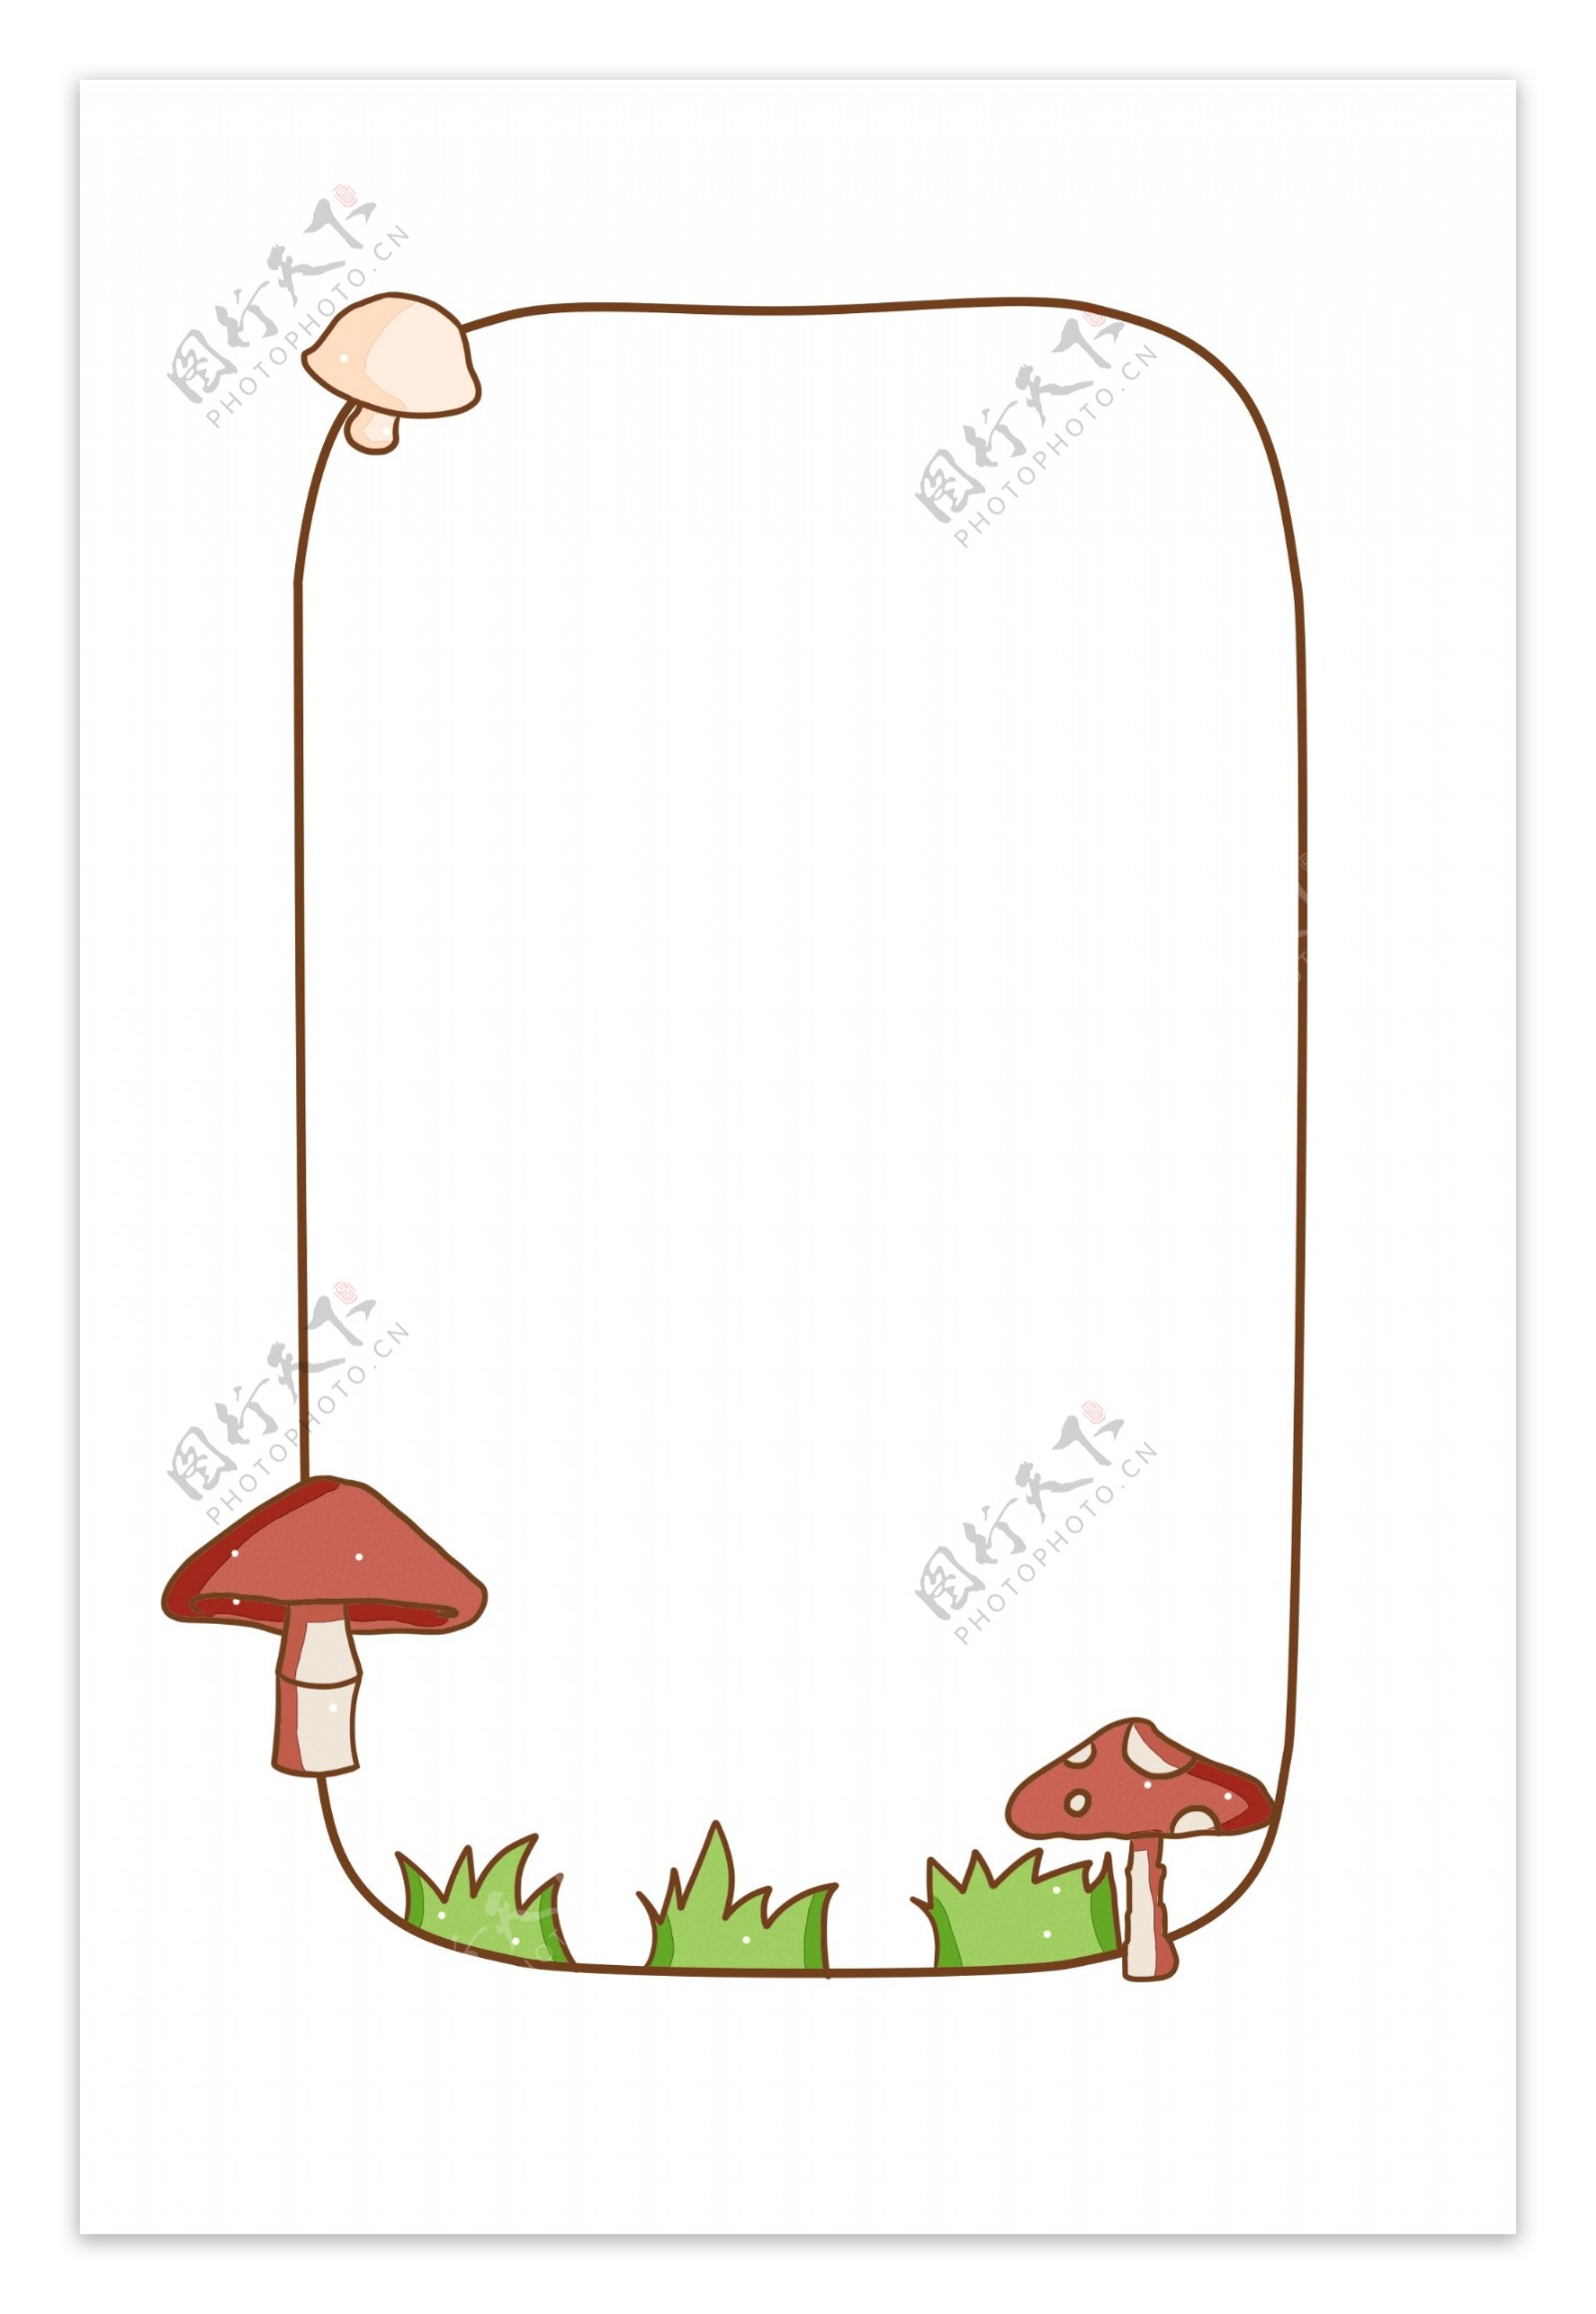 小蘑菇边框装饰插画